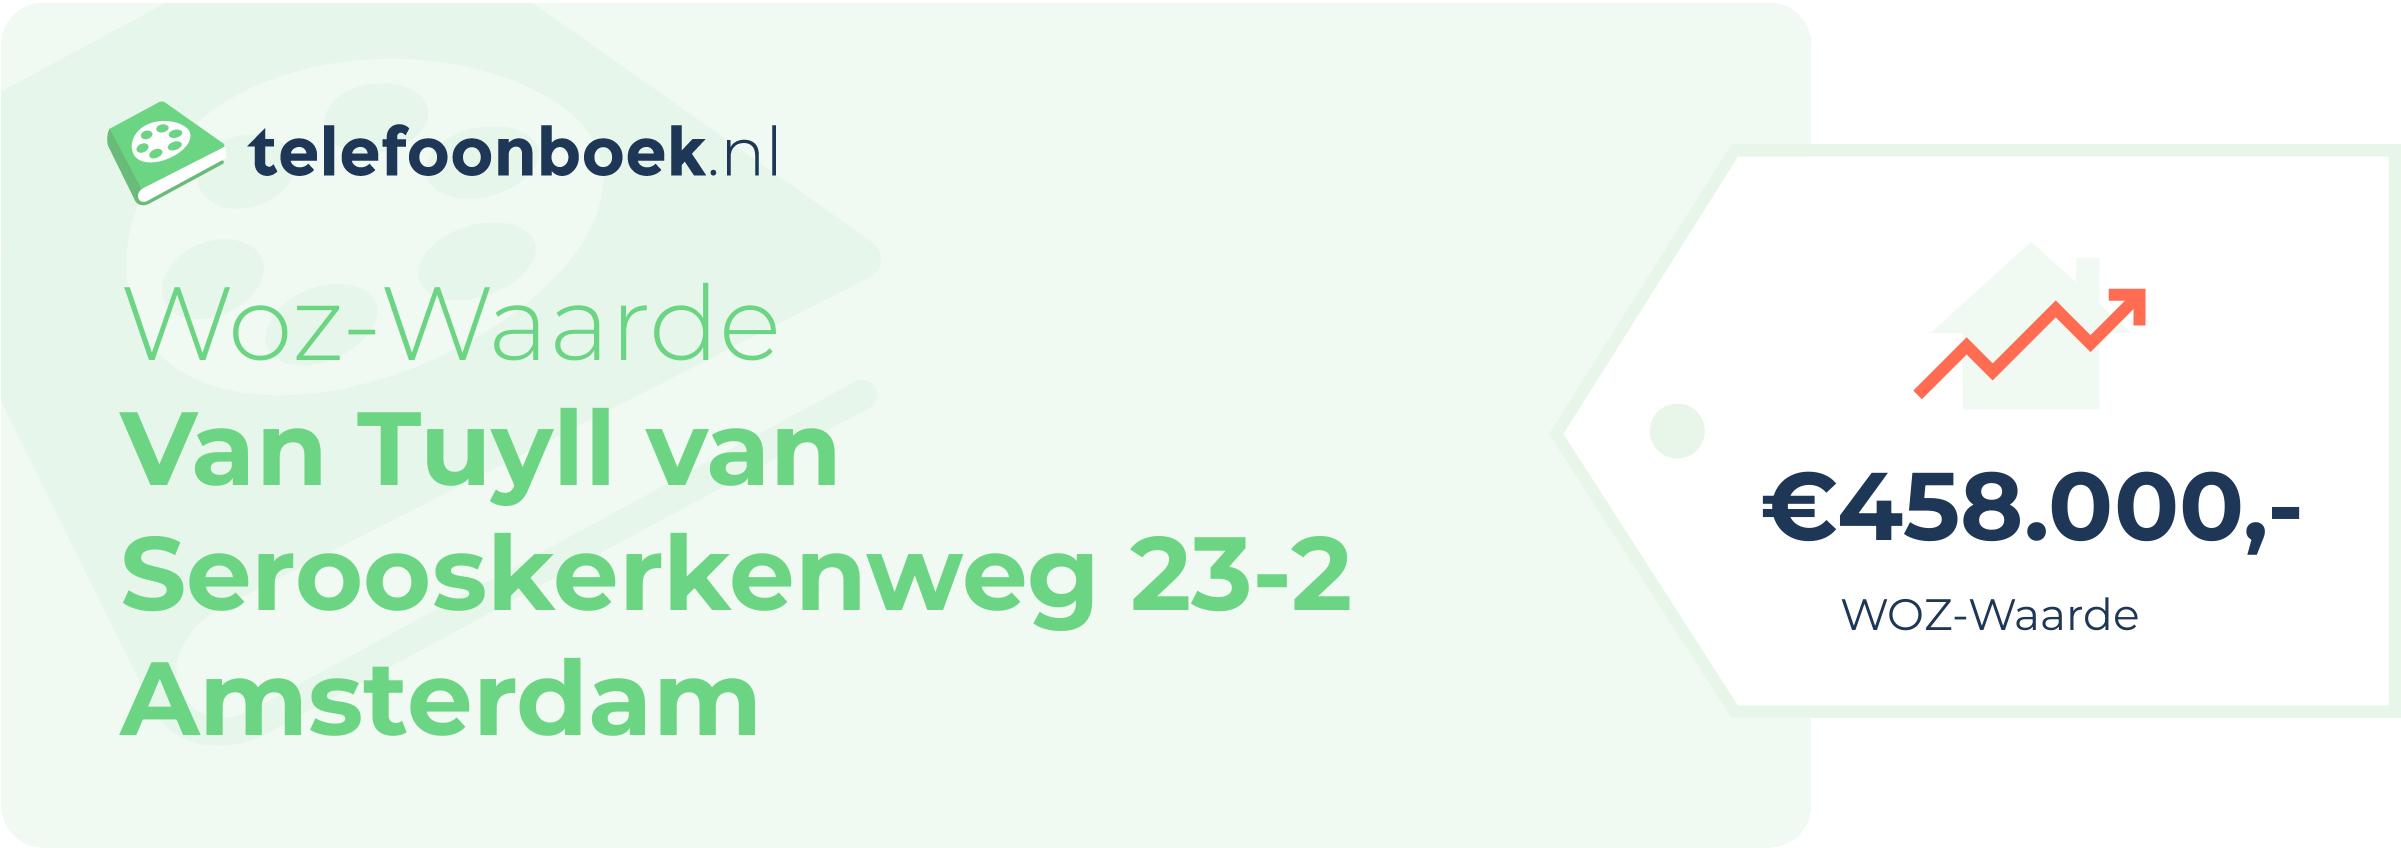 WOZ-waarde Van Tuyll Van Serooskerkenweg 23-2 Amsterdam